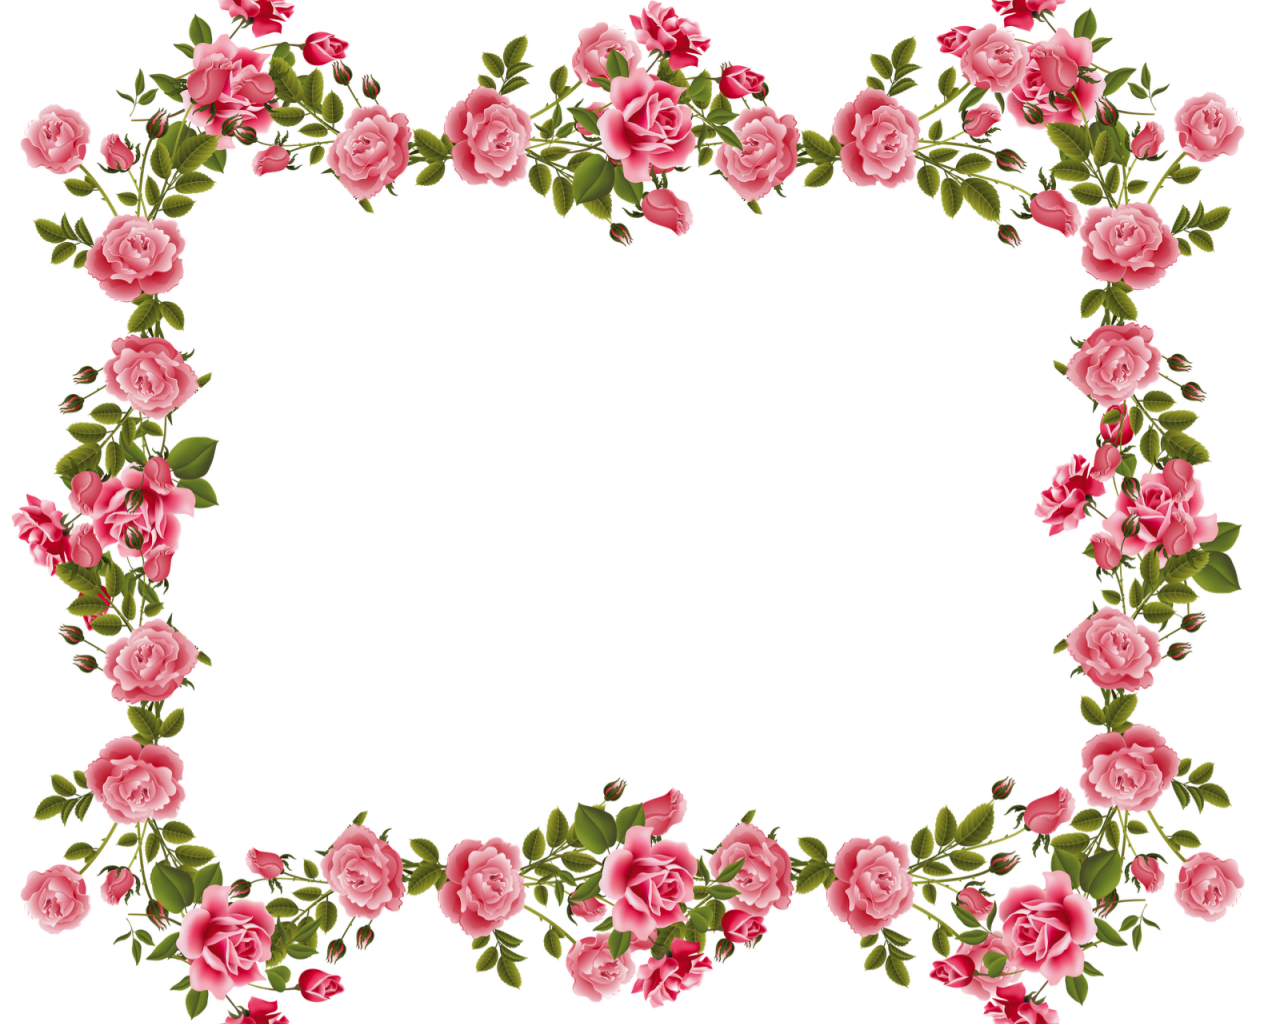 Free download photohoppng frames wallpaper designs Vintage Rose Frame [1600x1445] for your Desktop, Mobile & Tablet. Explore Floral Wallpaper Borders Patterns. Blue Floral Wallpaper Border, Rose Wallpaper Border Designs